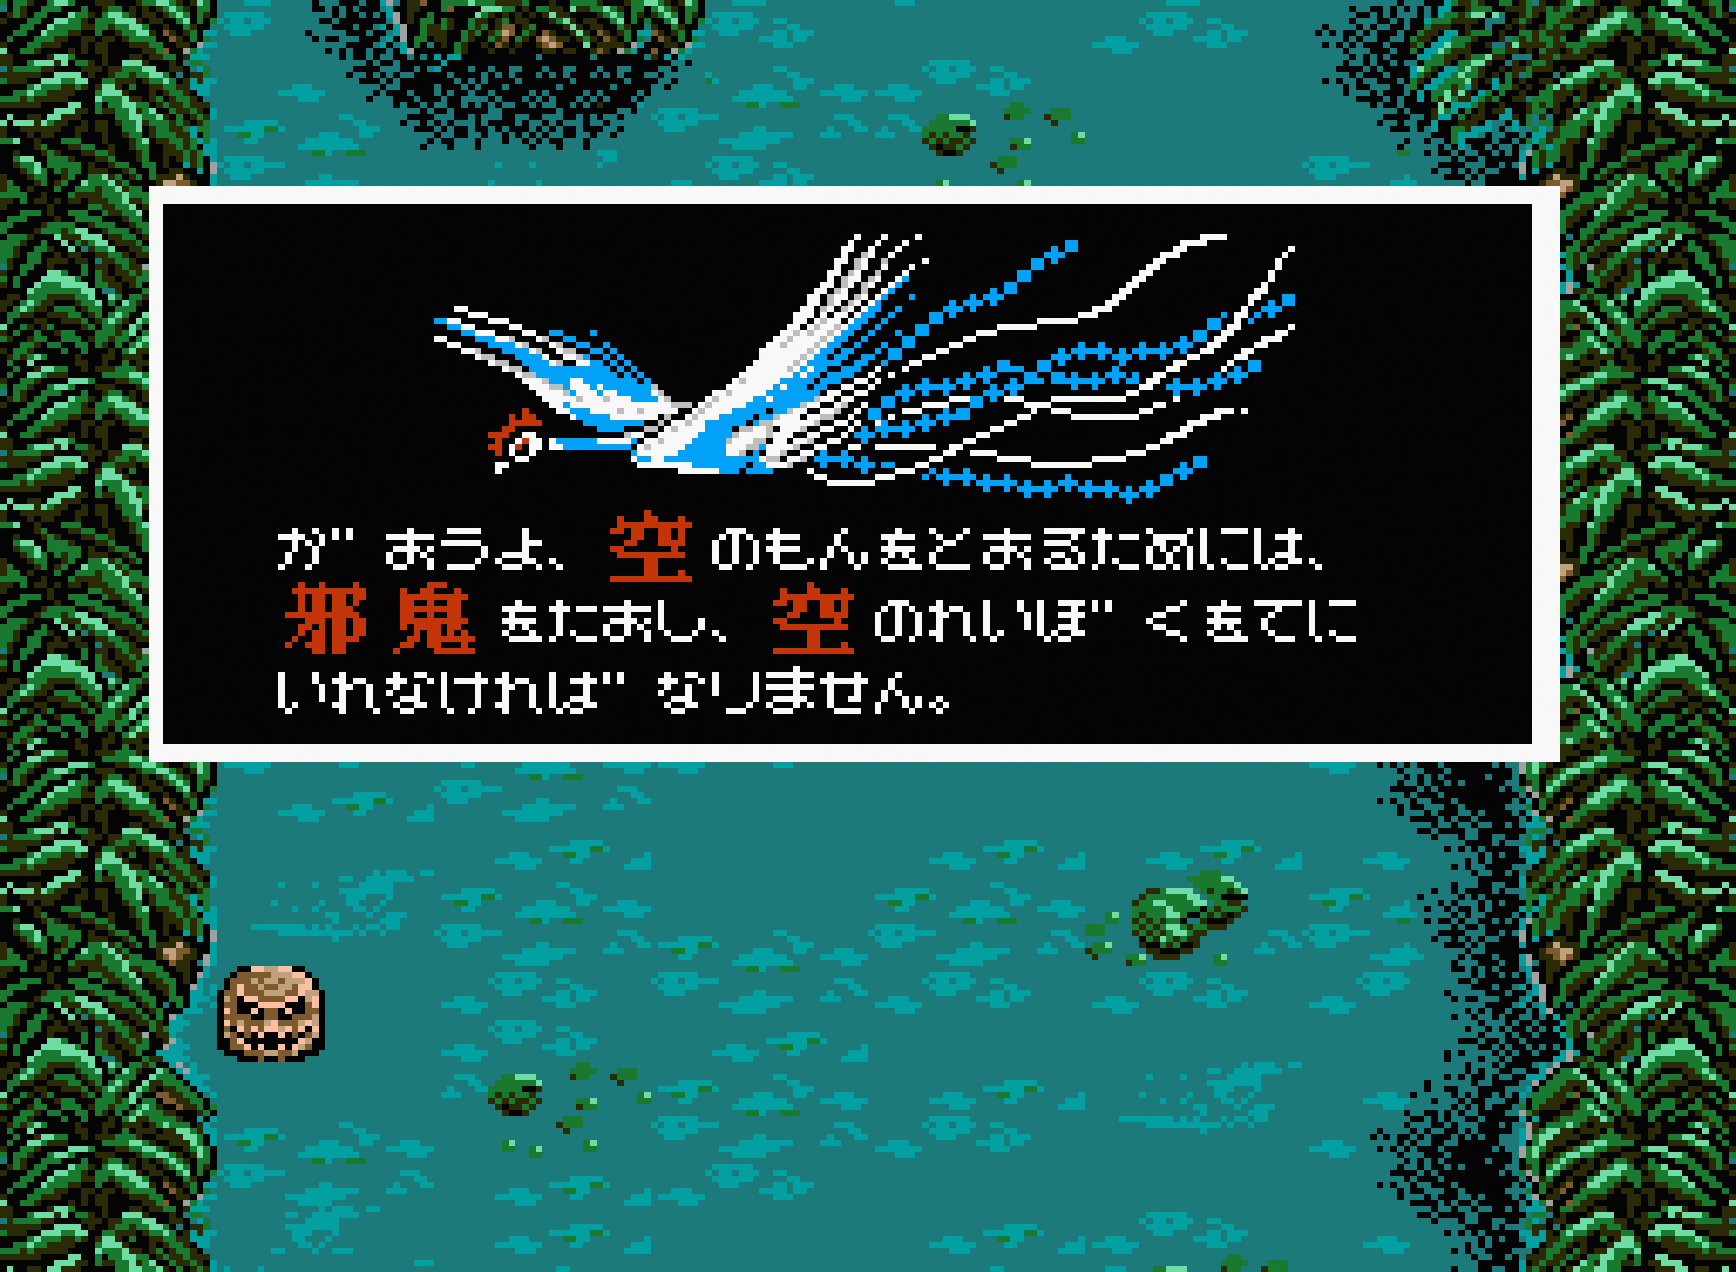 火の鳥 ⎯ 鳳凰編 ⎯ for MSX2